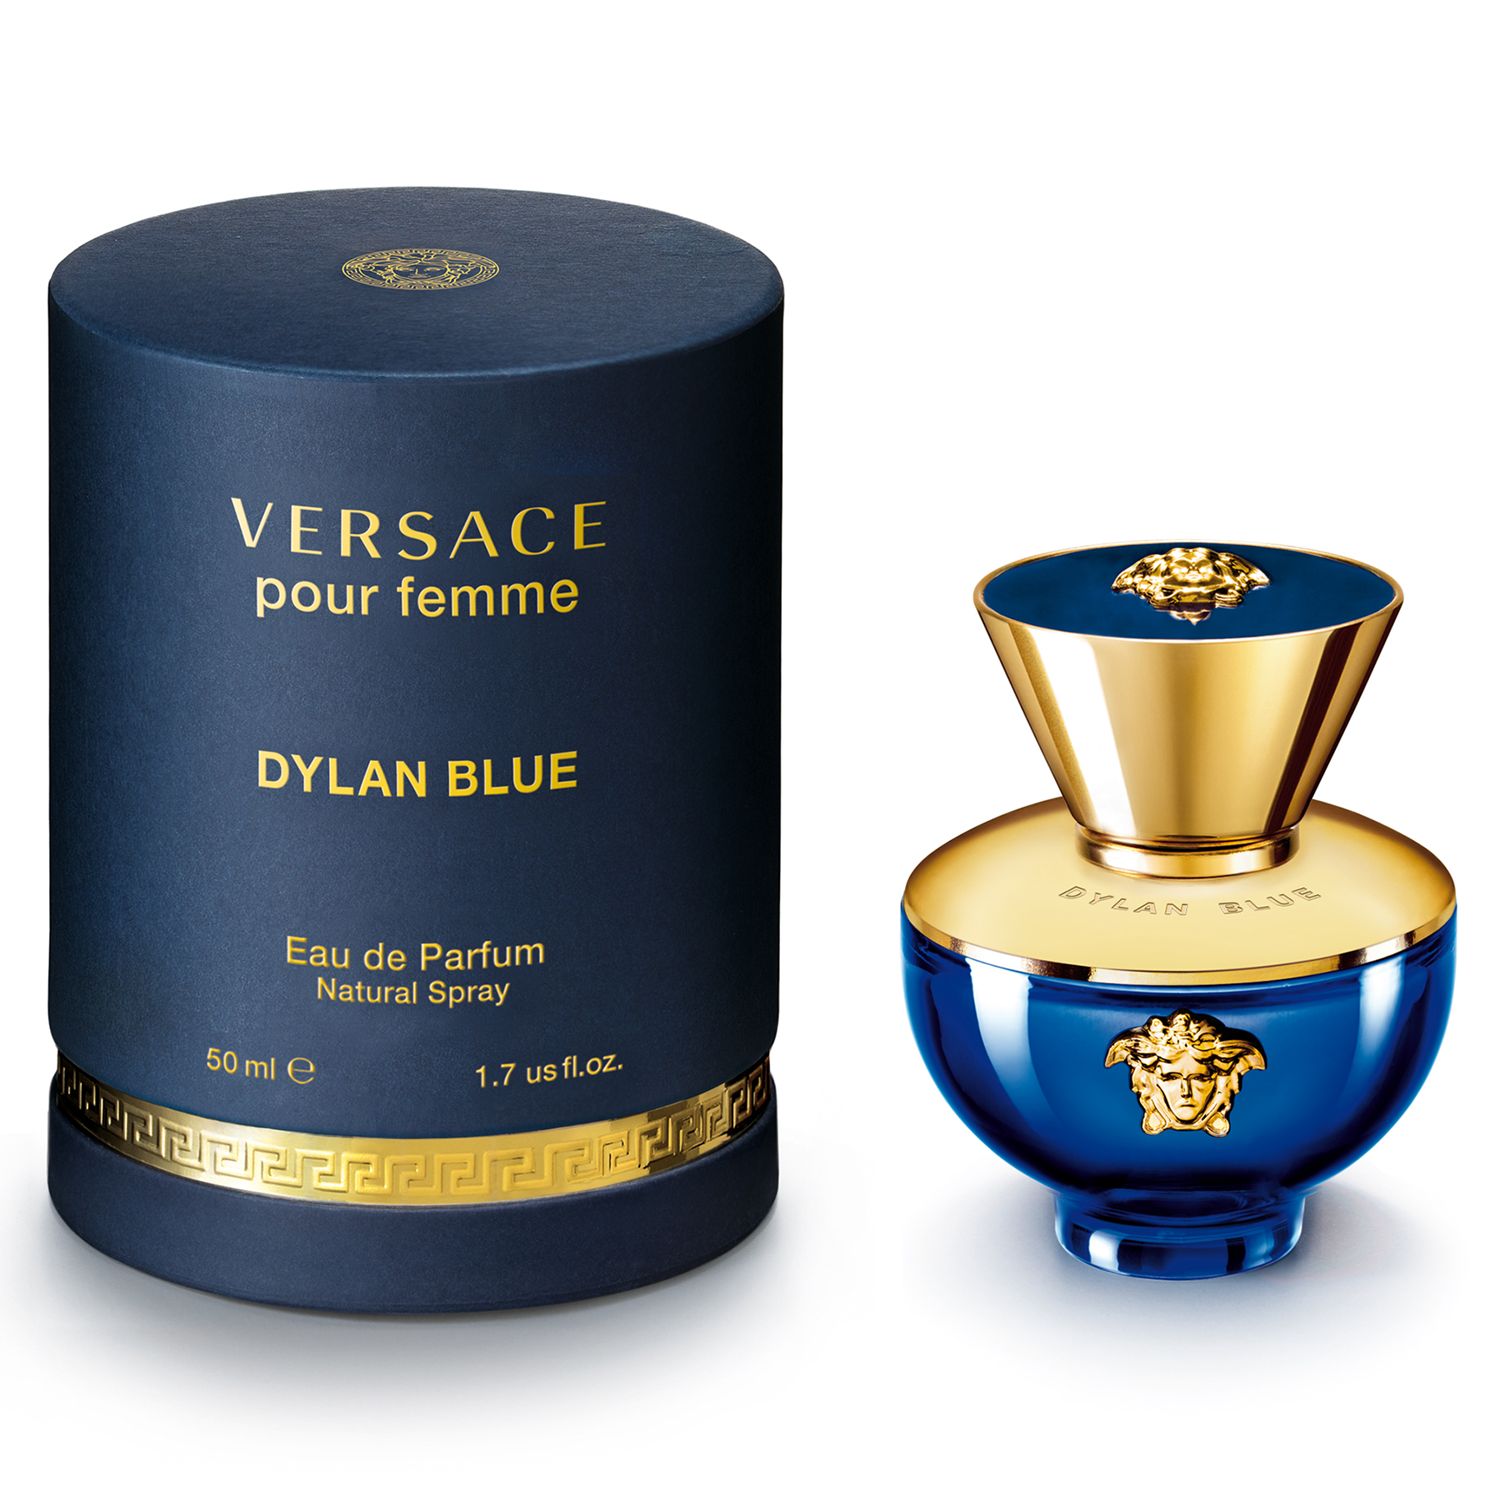 Versace Dylan Blue Pour Femme Eau de Parfum, 30ml 4